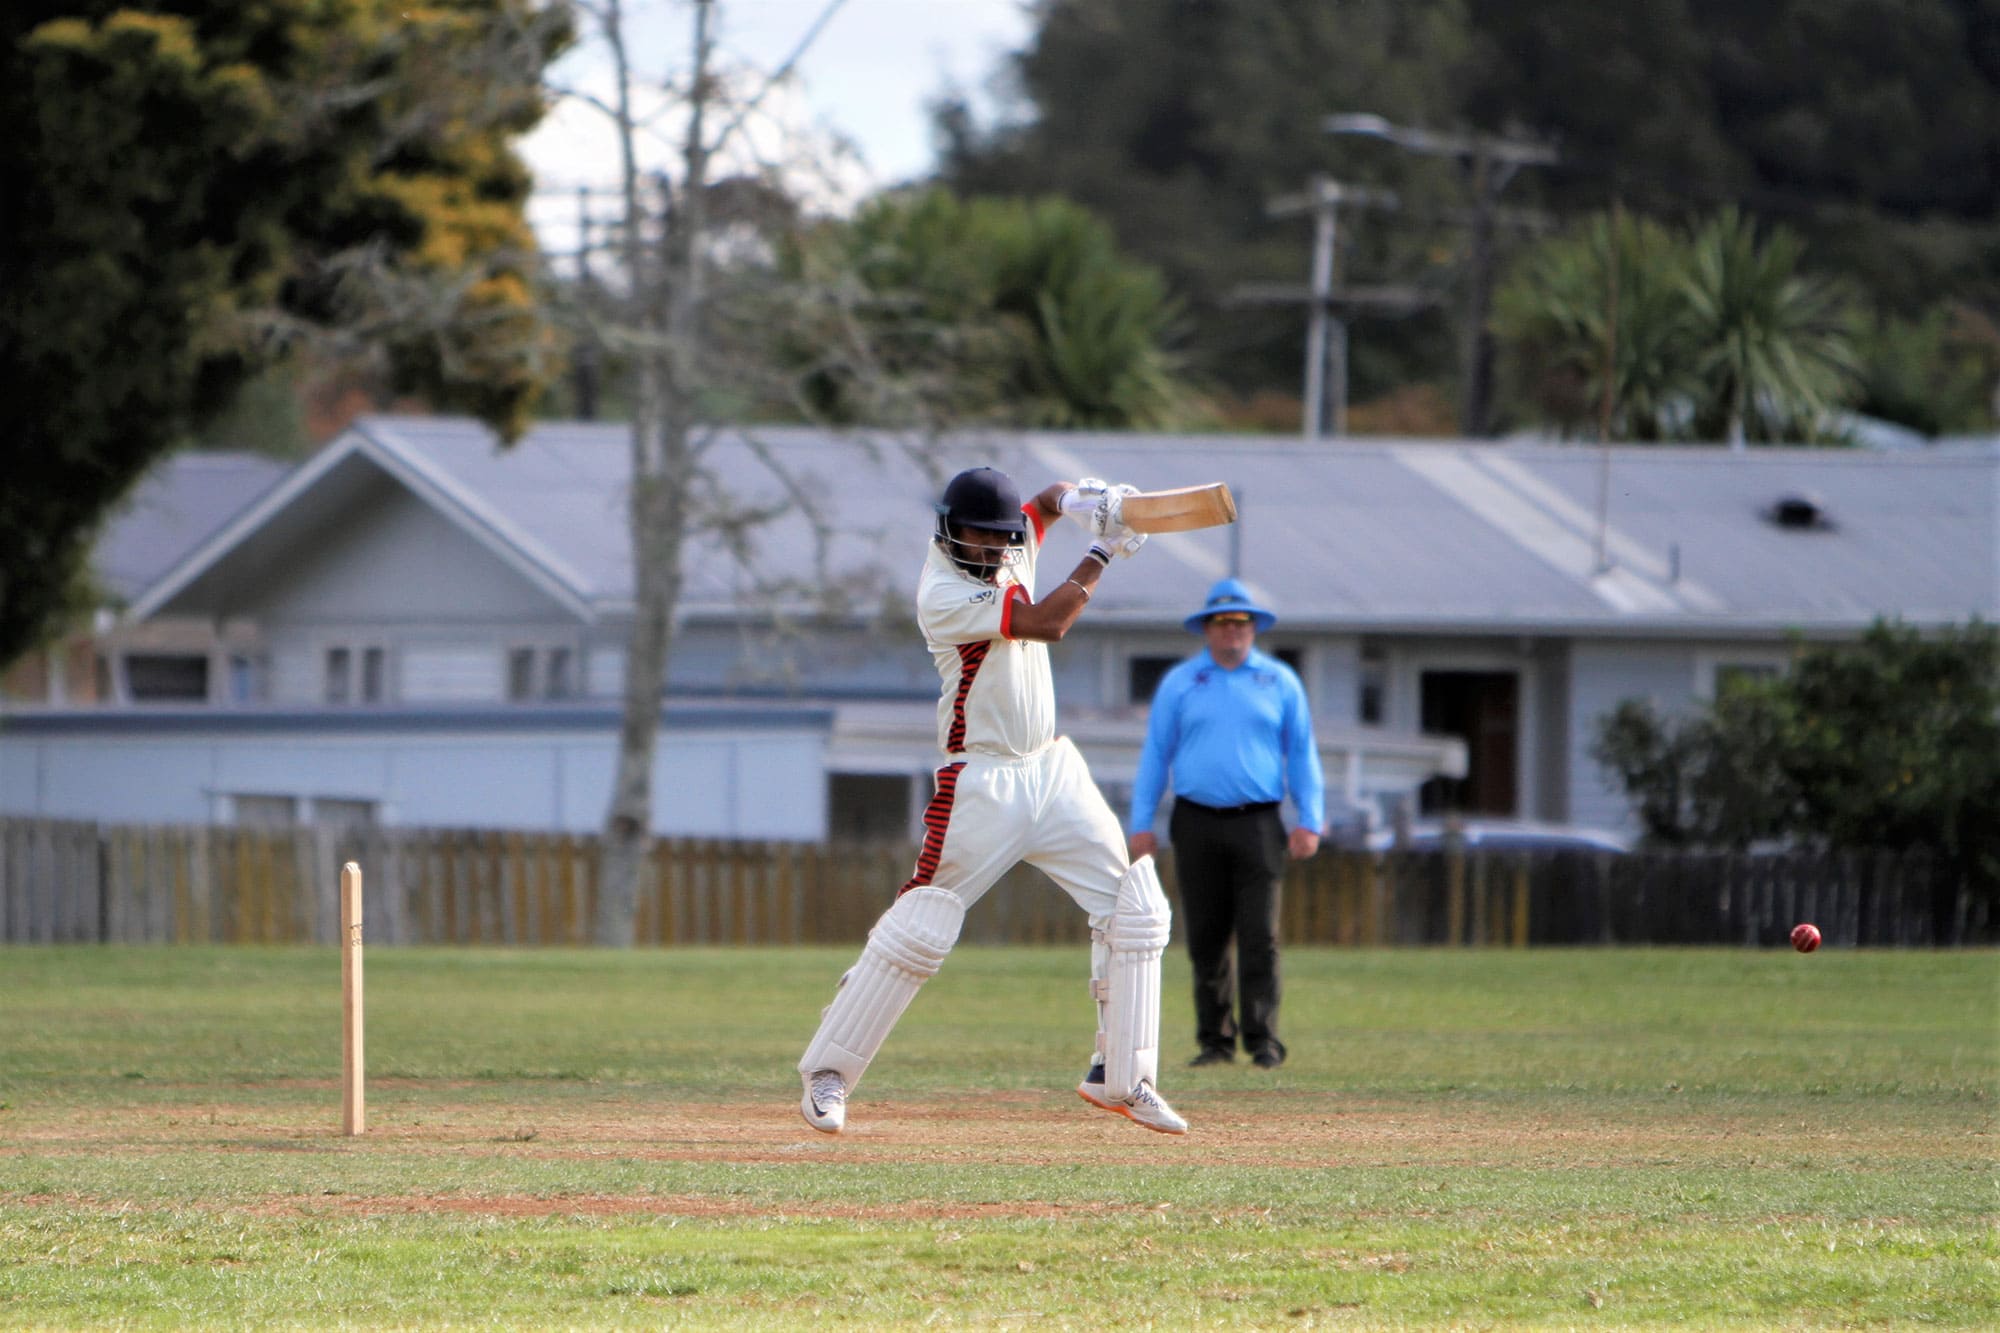 hamilton old boys cricket club Waikato New Zealand Team Gallery Photos 4